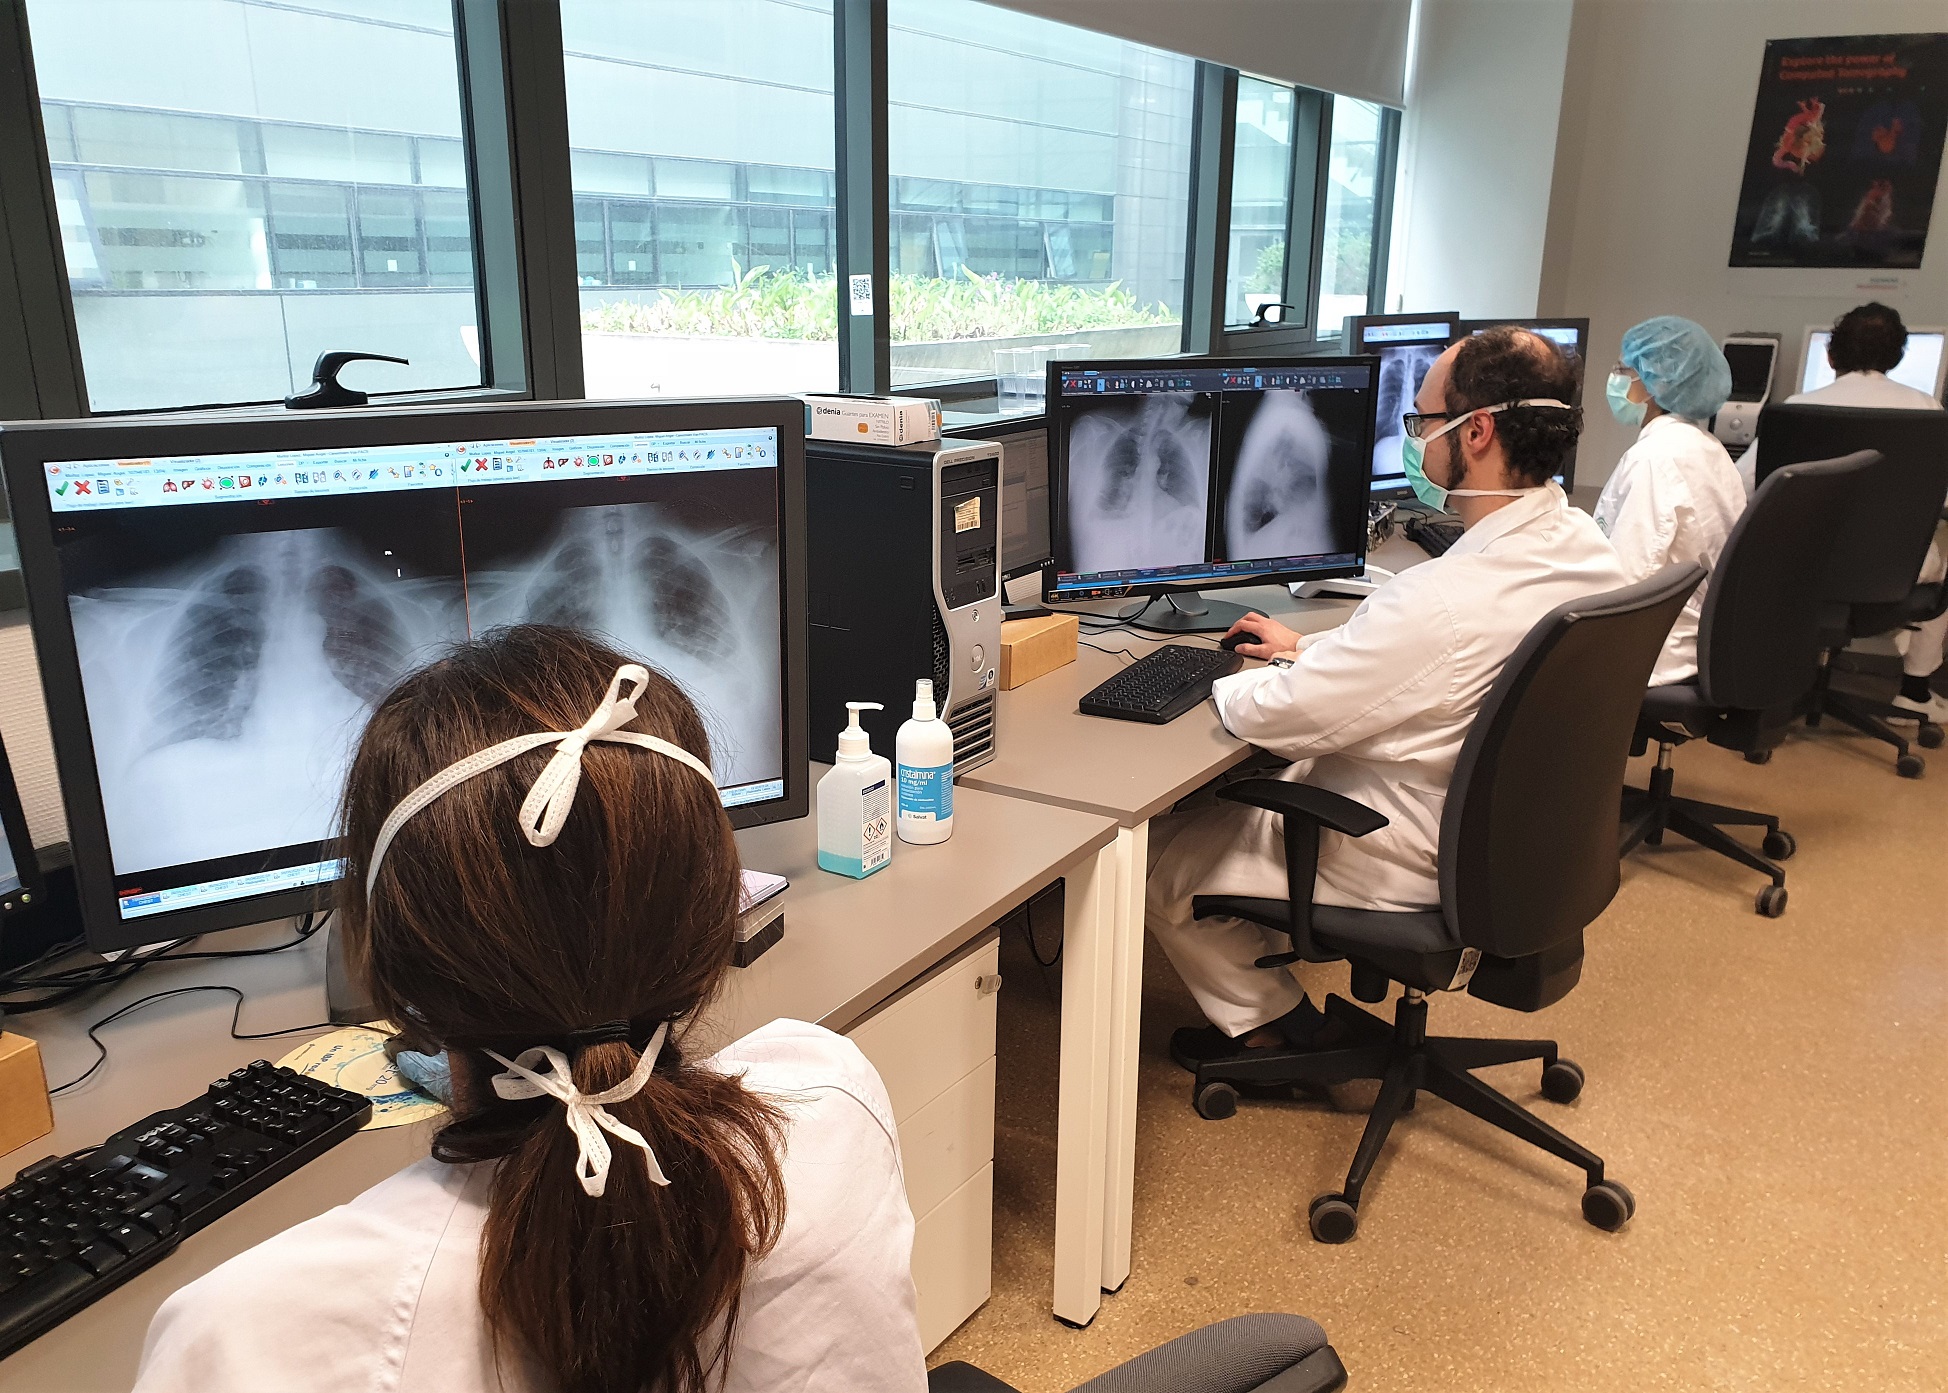 Investigadores granadinos desarrollan un modelo capaz de determinar si un paciente tiene coronavirus leyendo su radiografía de tórax